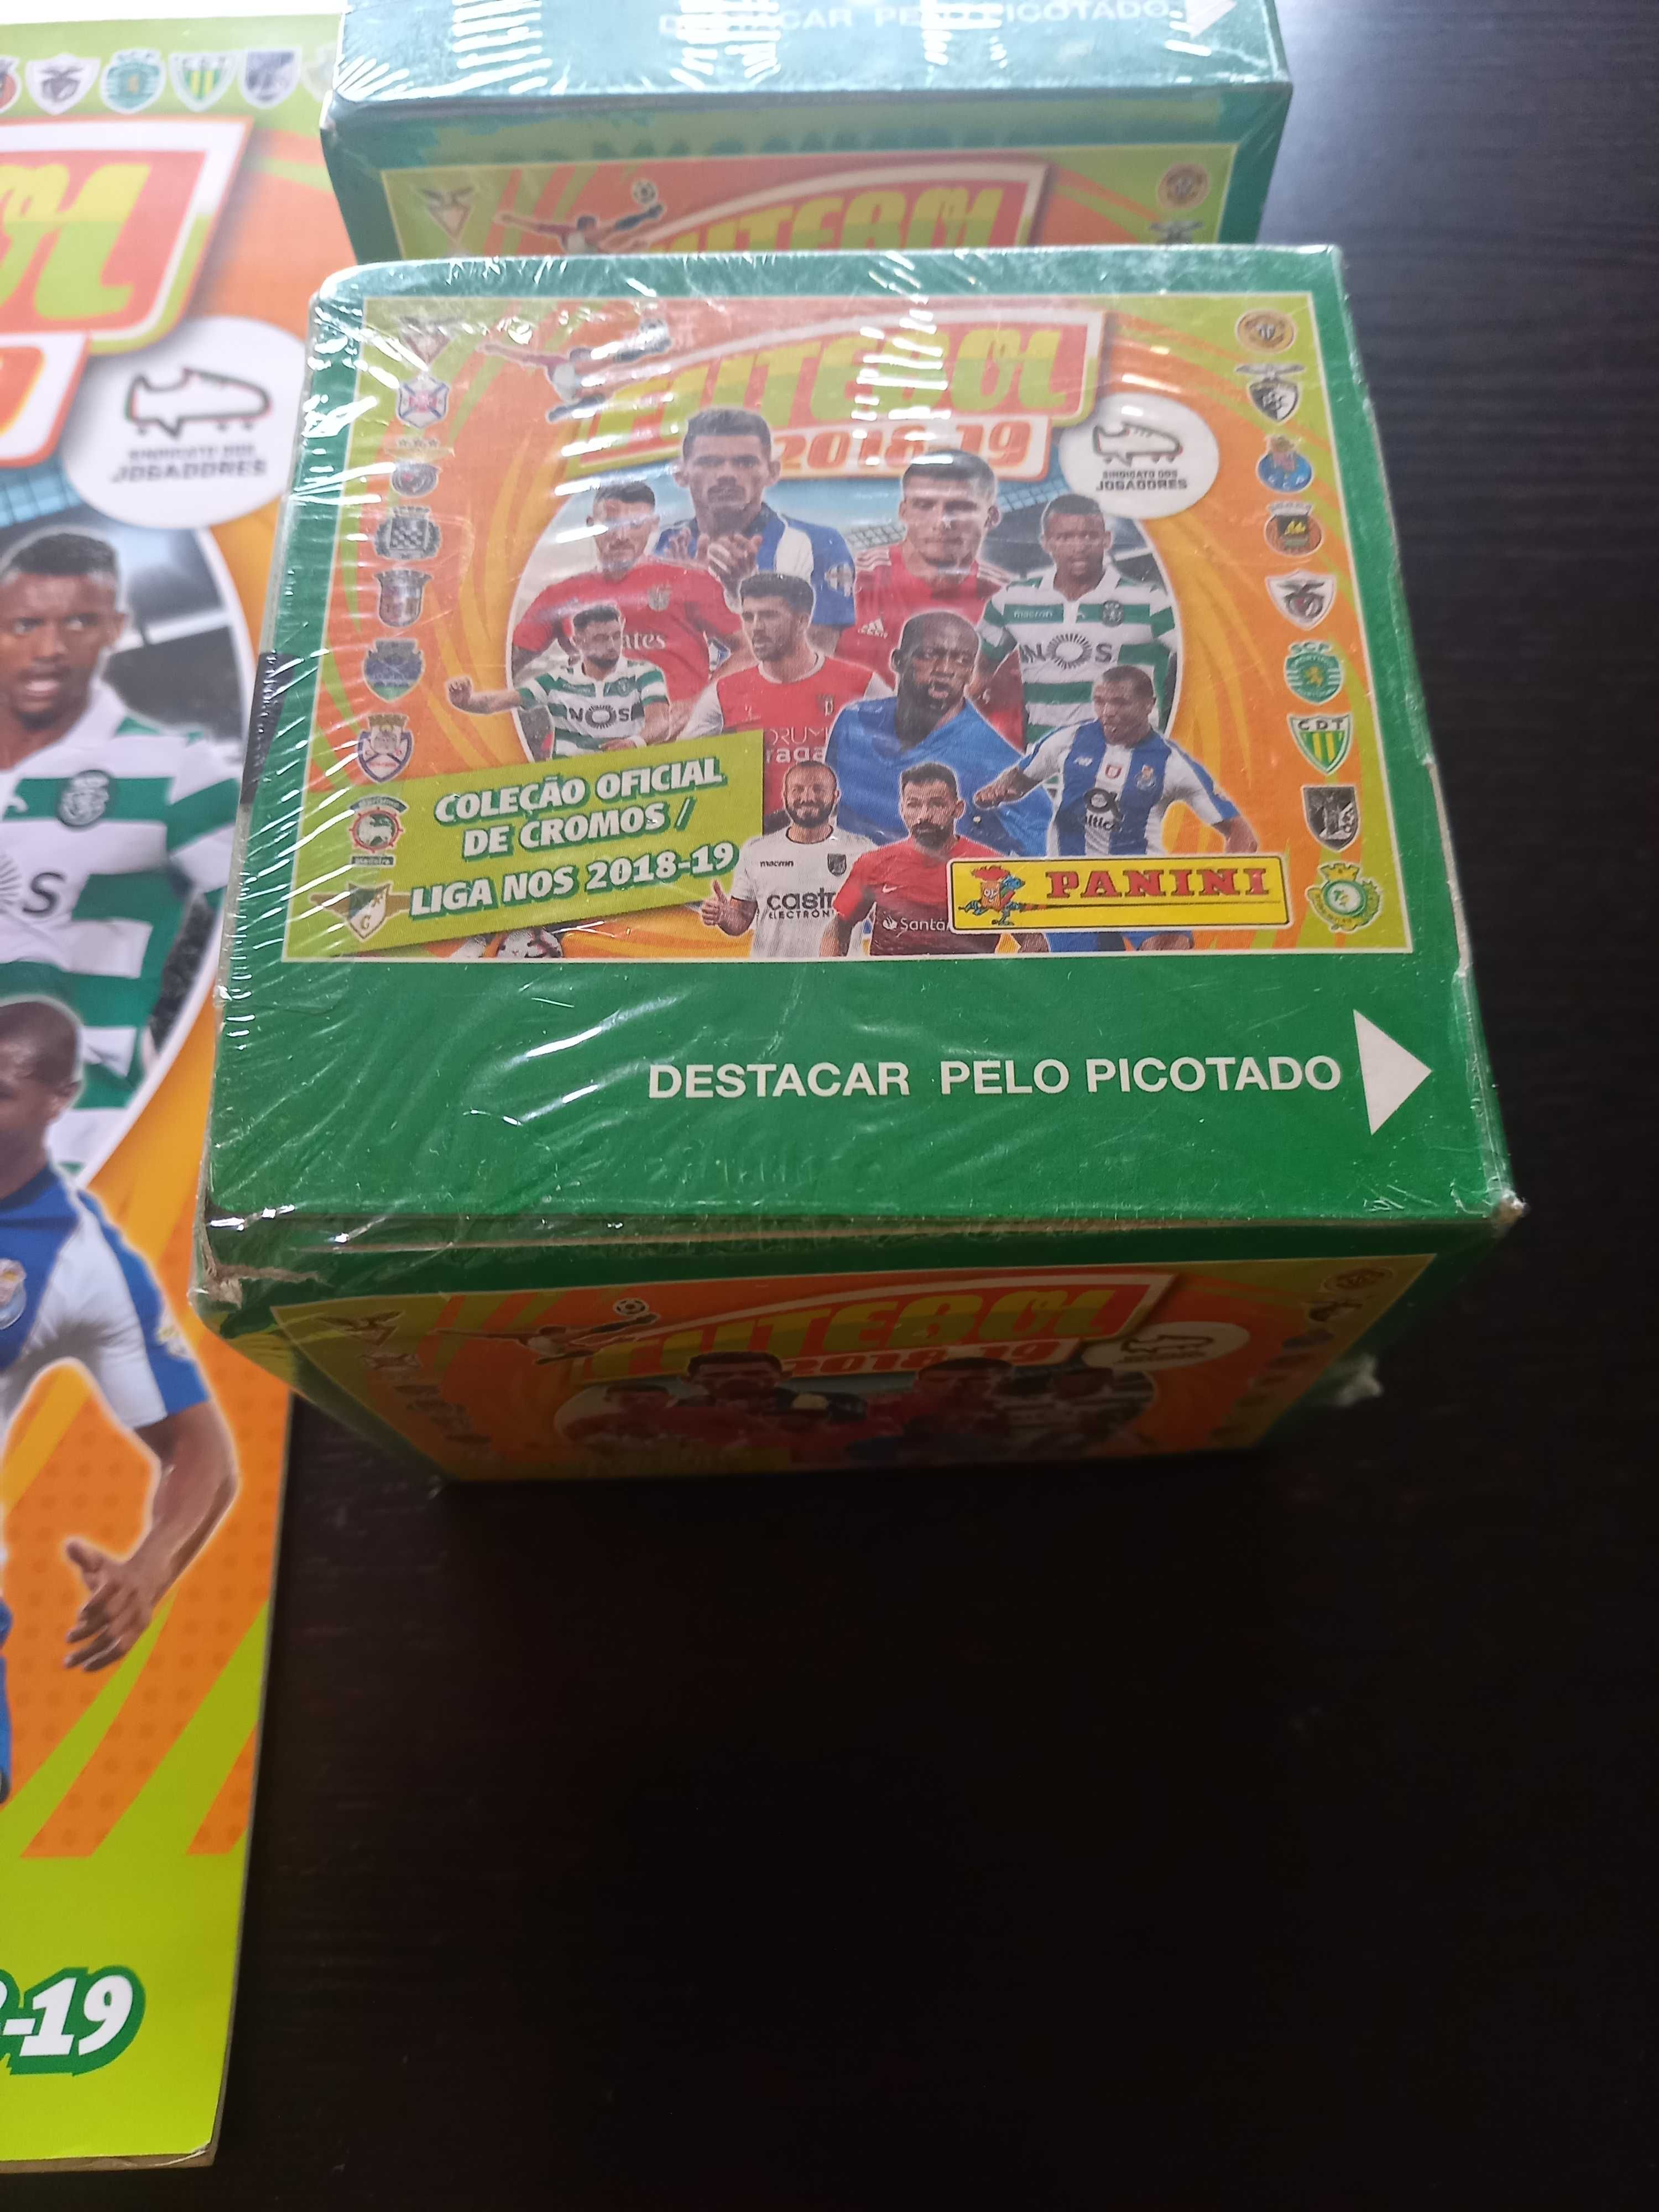 2 caixas seladas de cromos Liga Nos Futebol 2018-19 da Panini